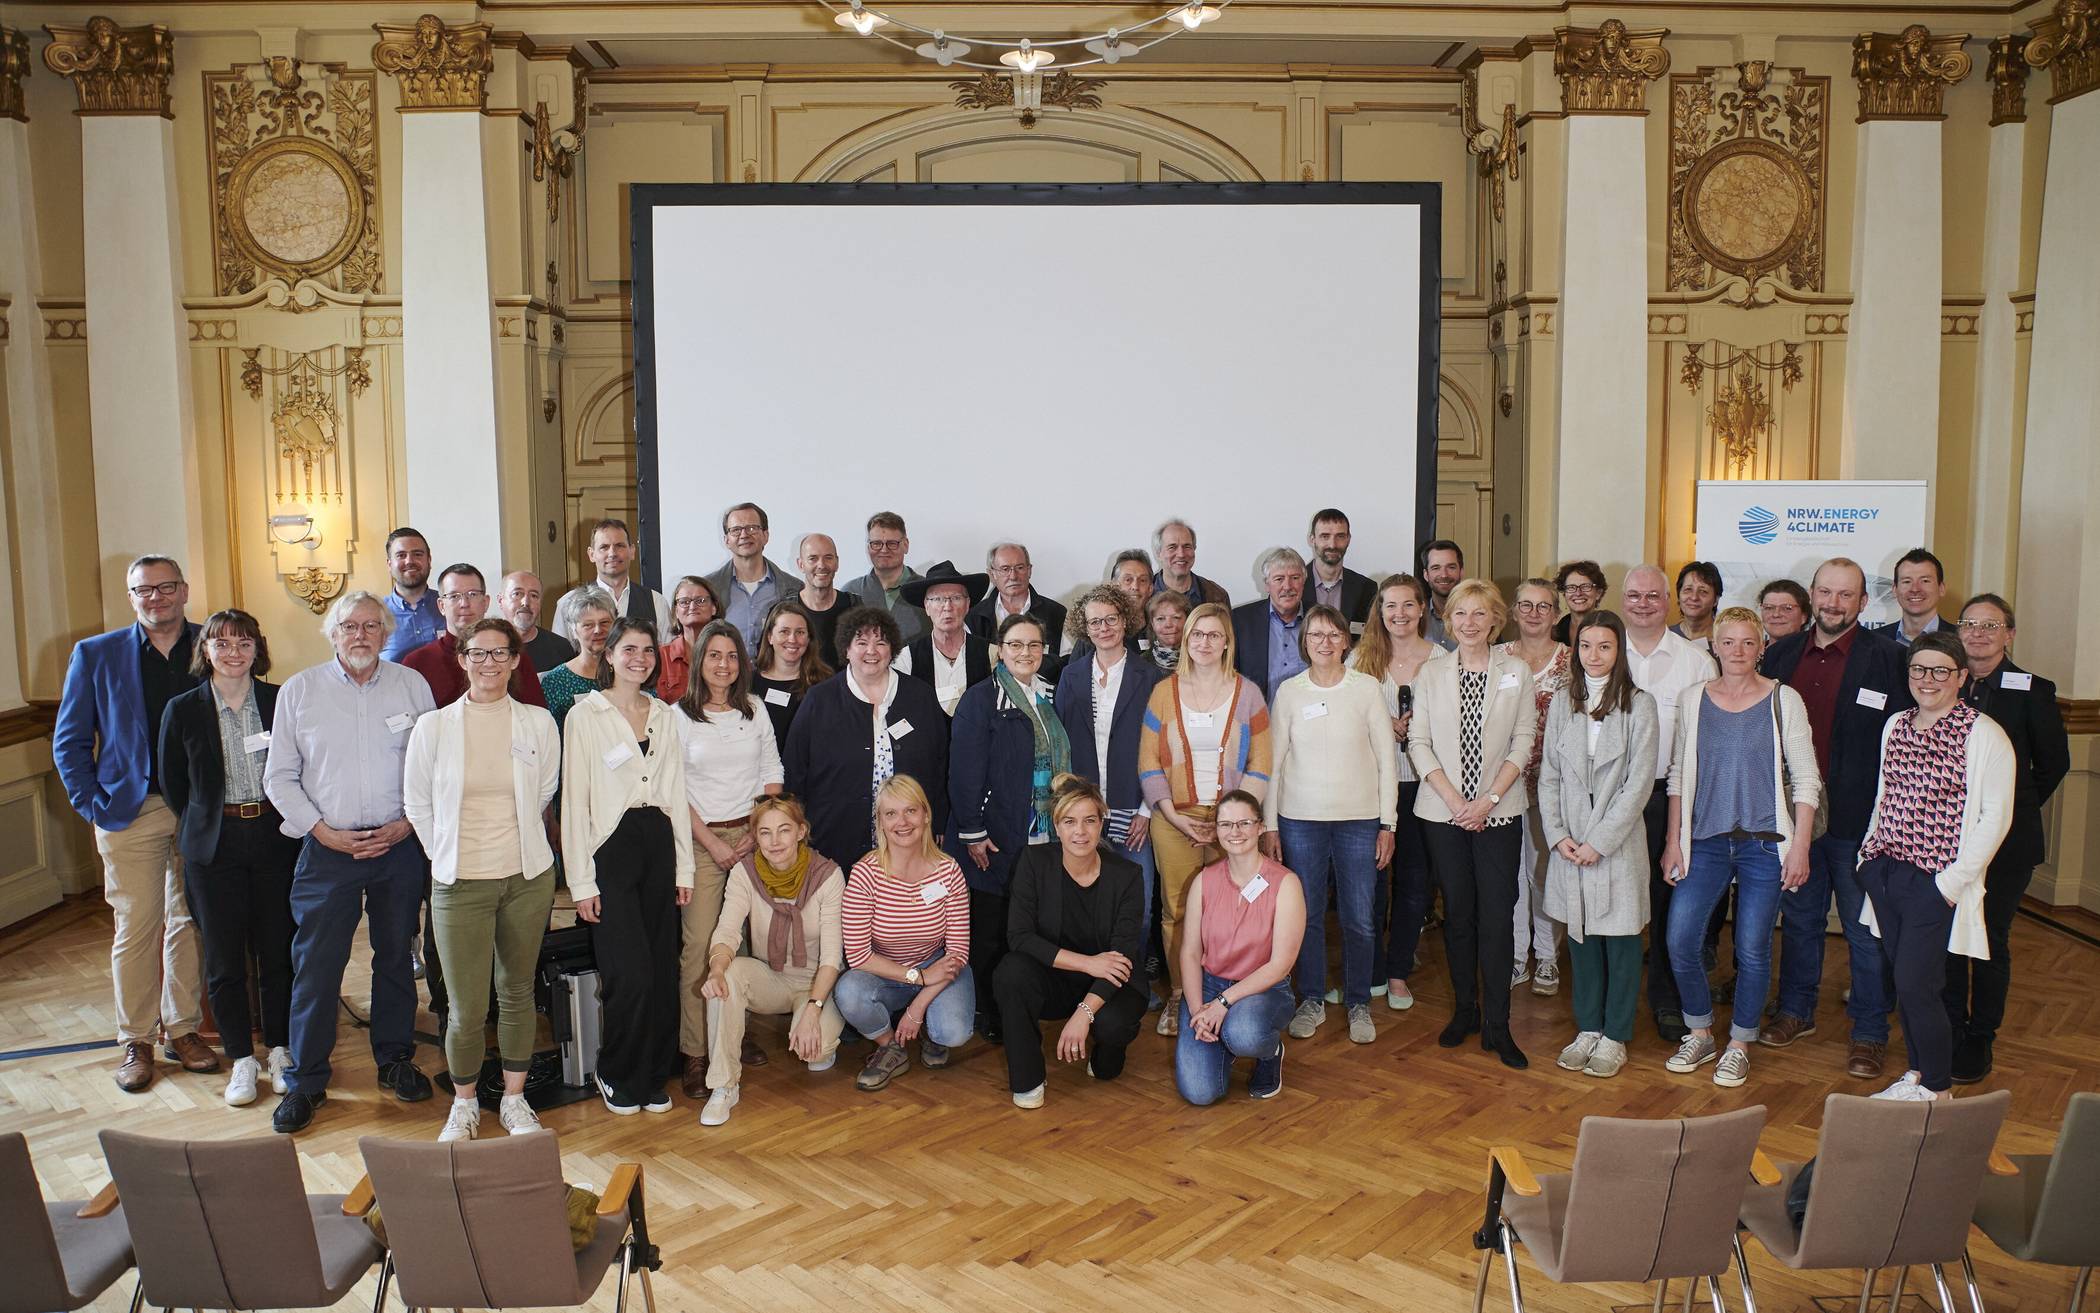 Gruppenfoto mit den rund 50 Klimaschutzpatinnen und -paten sowie Klimaschutzmanagerinnen und -managern aus dem Projekt KlikKS bei der Auftaktveranstaltung in der Historischen Stadthalle.